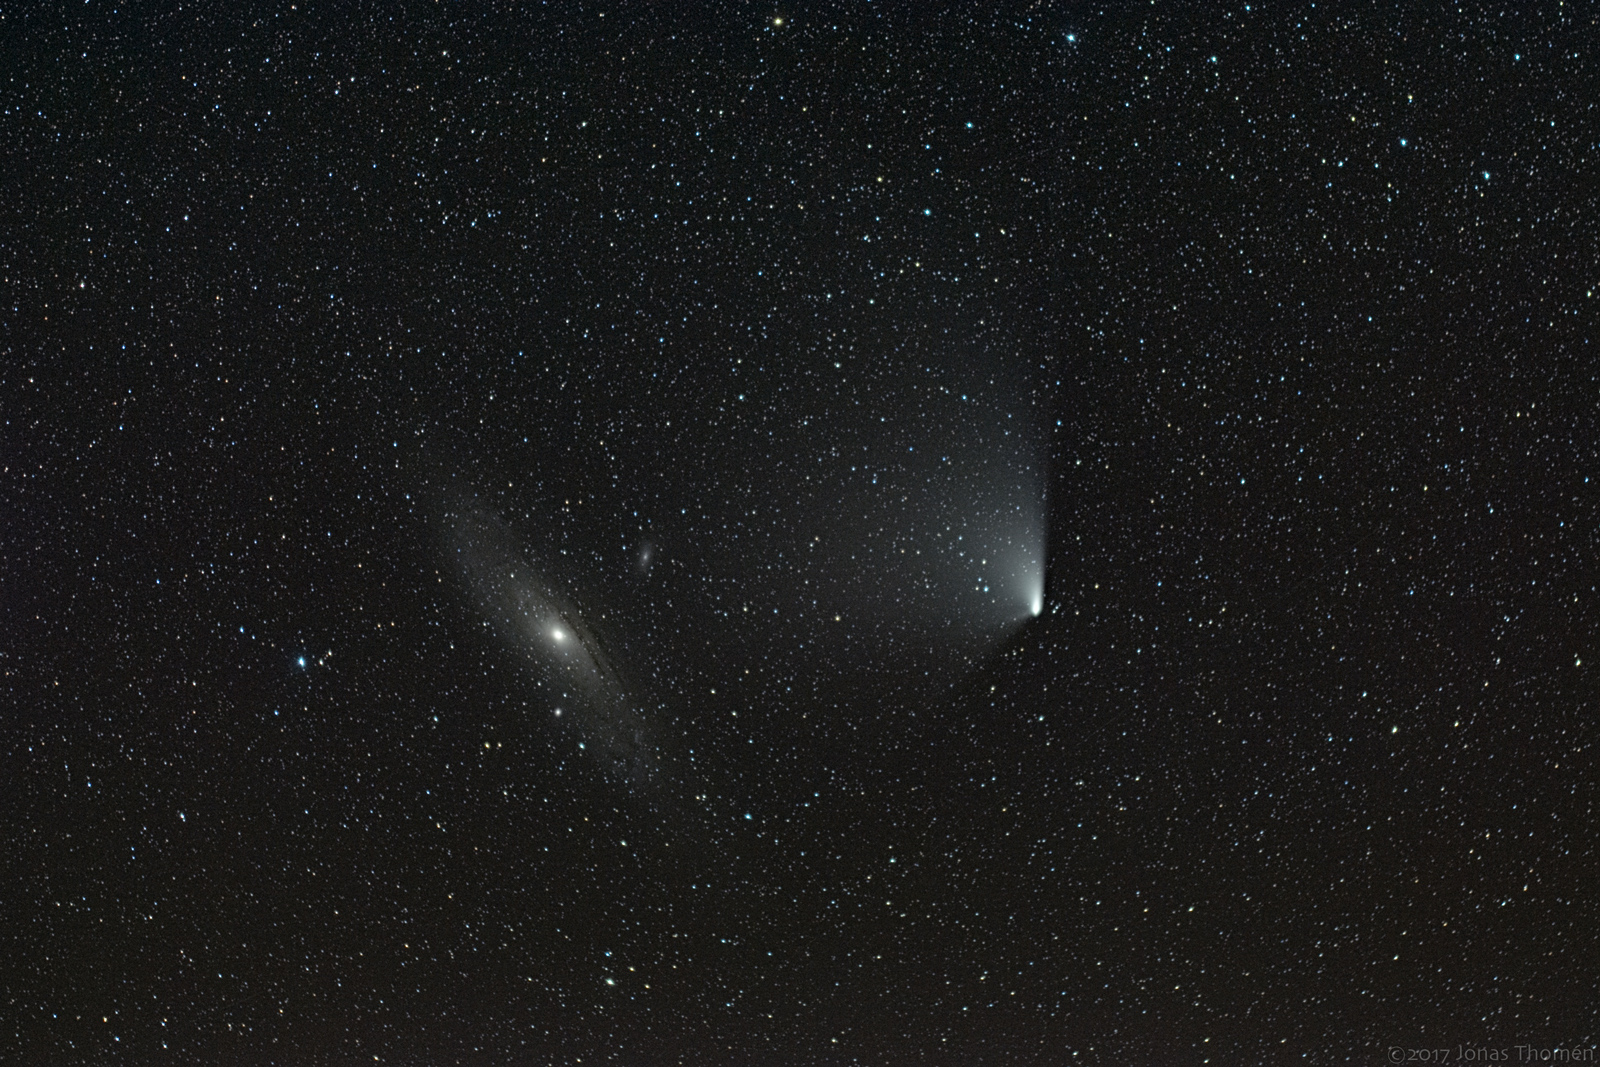 Andromeda Galaxy and Comet C/2011 L4 PANSTARRS